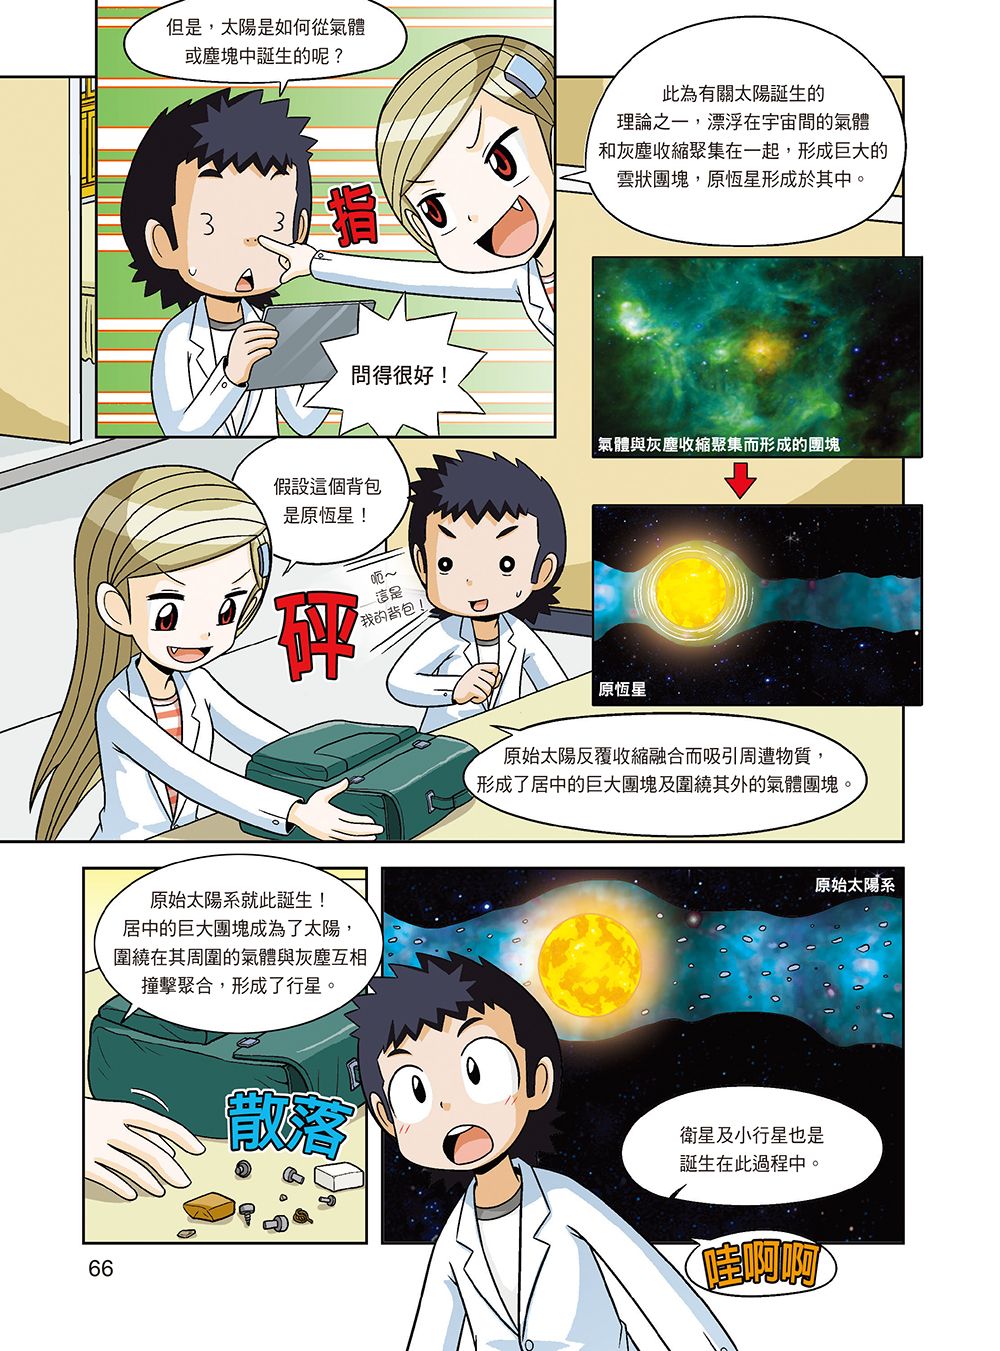 ►童書/青少年文學►暢銷書► 科學實驗王36：恆星與行星